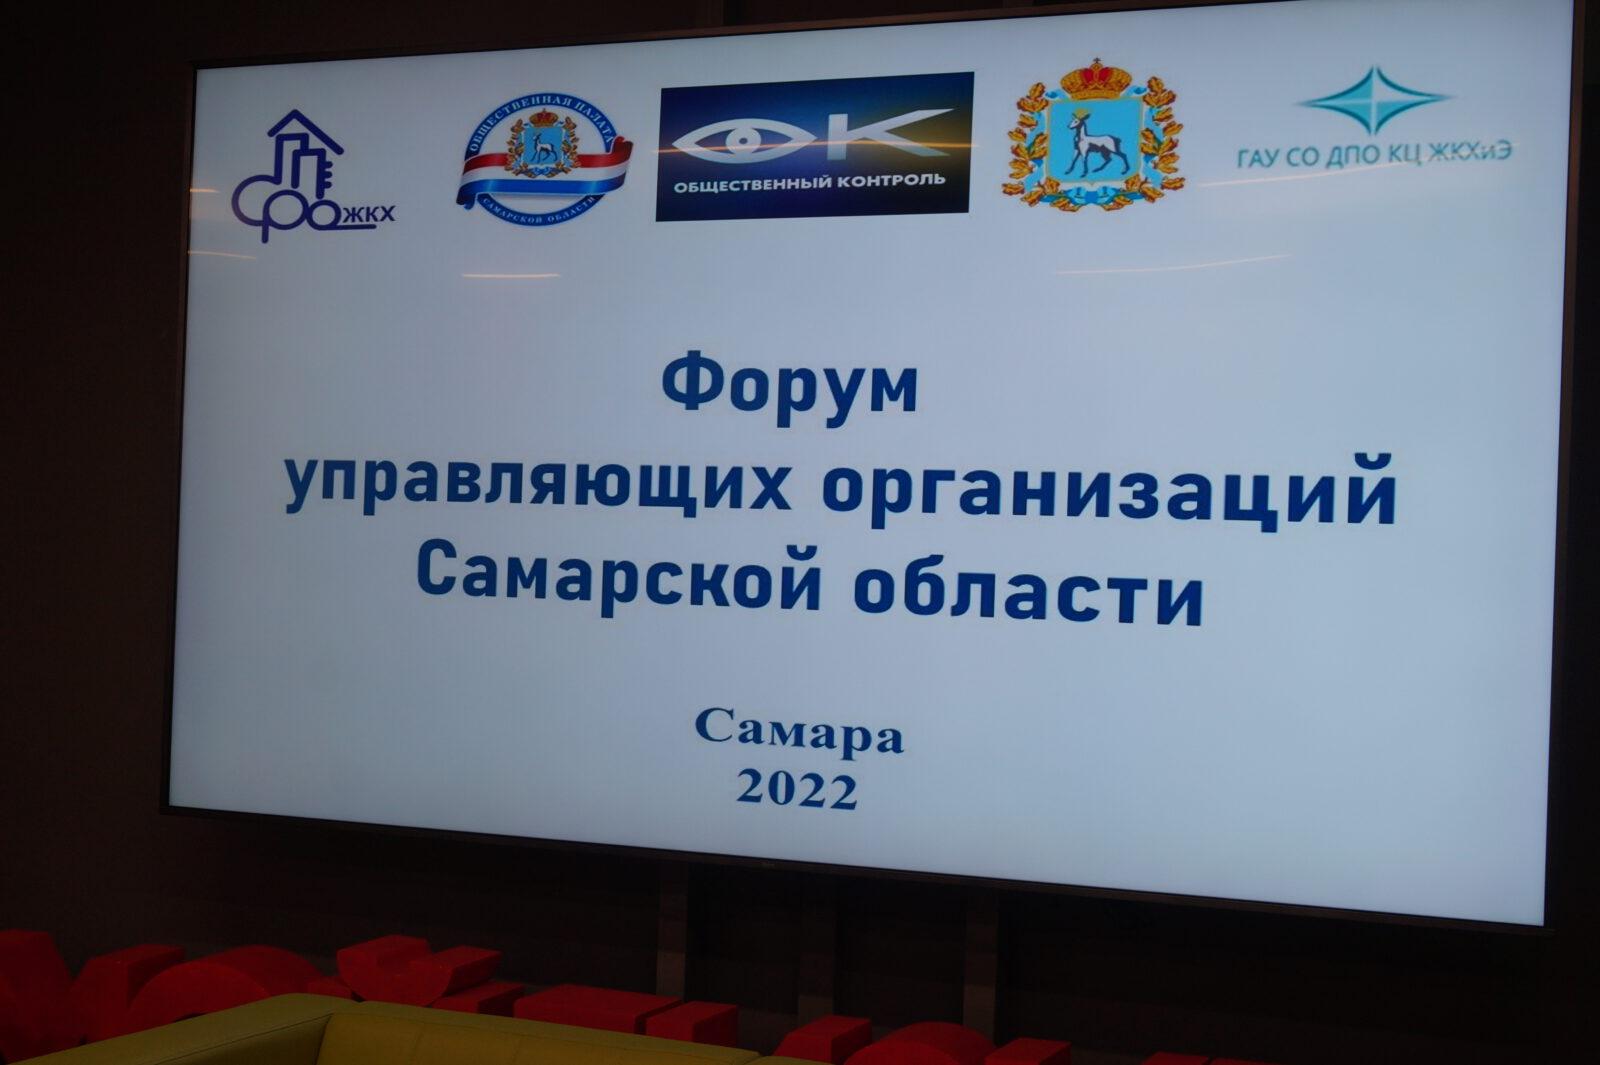 Форум управляющих организаций Самарской области